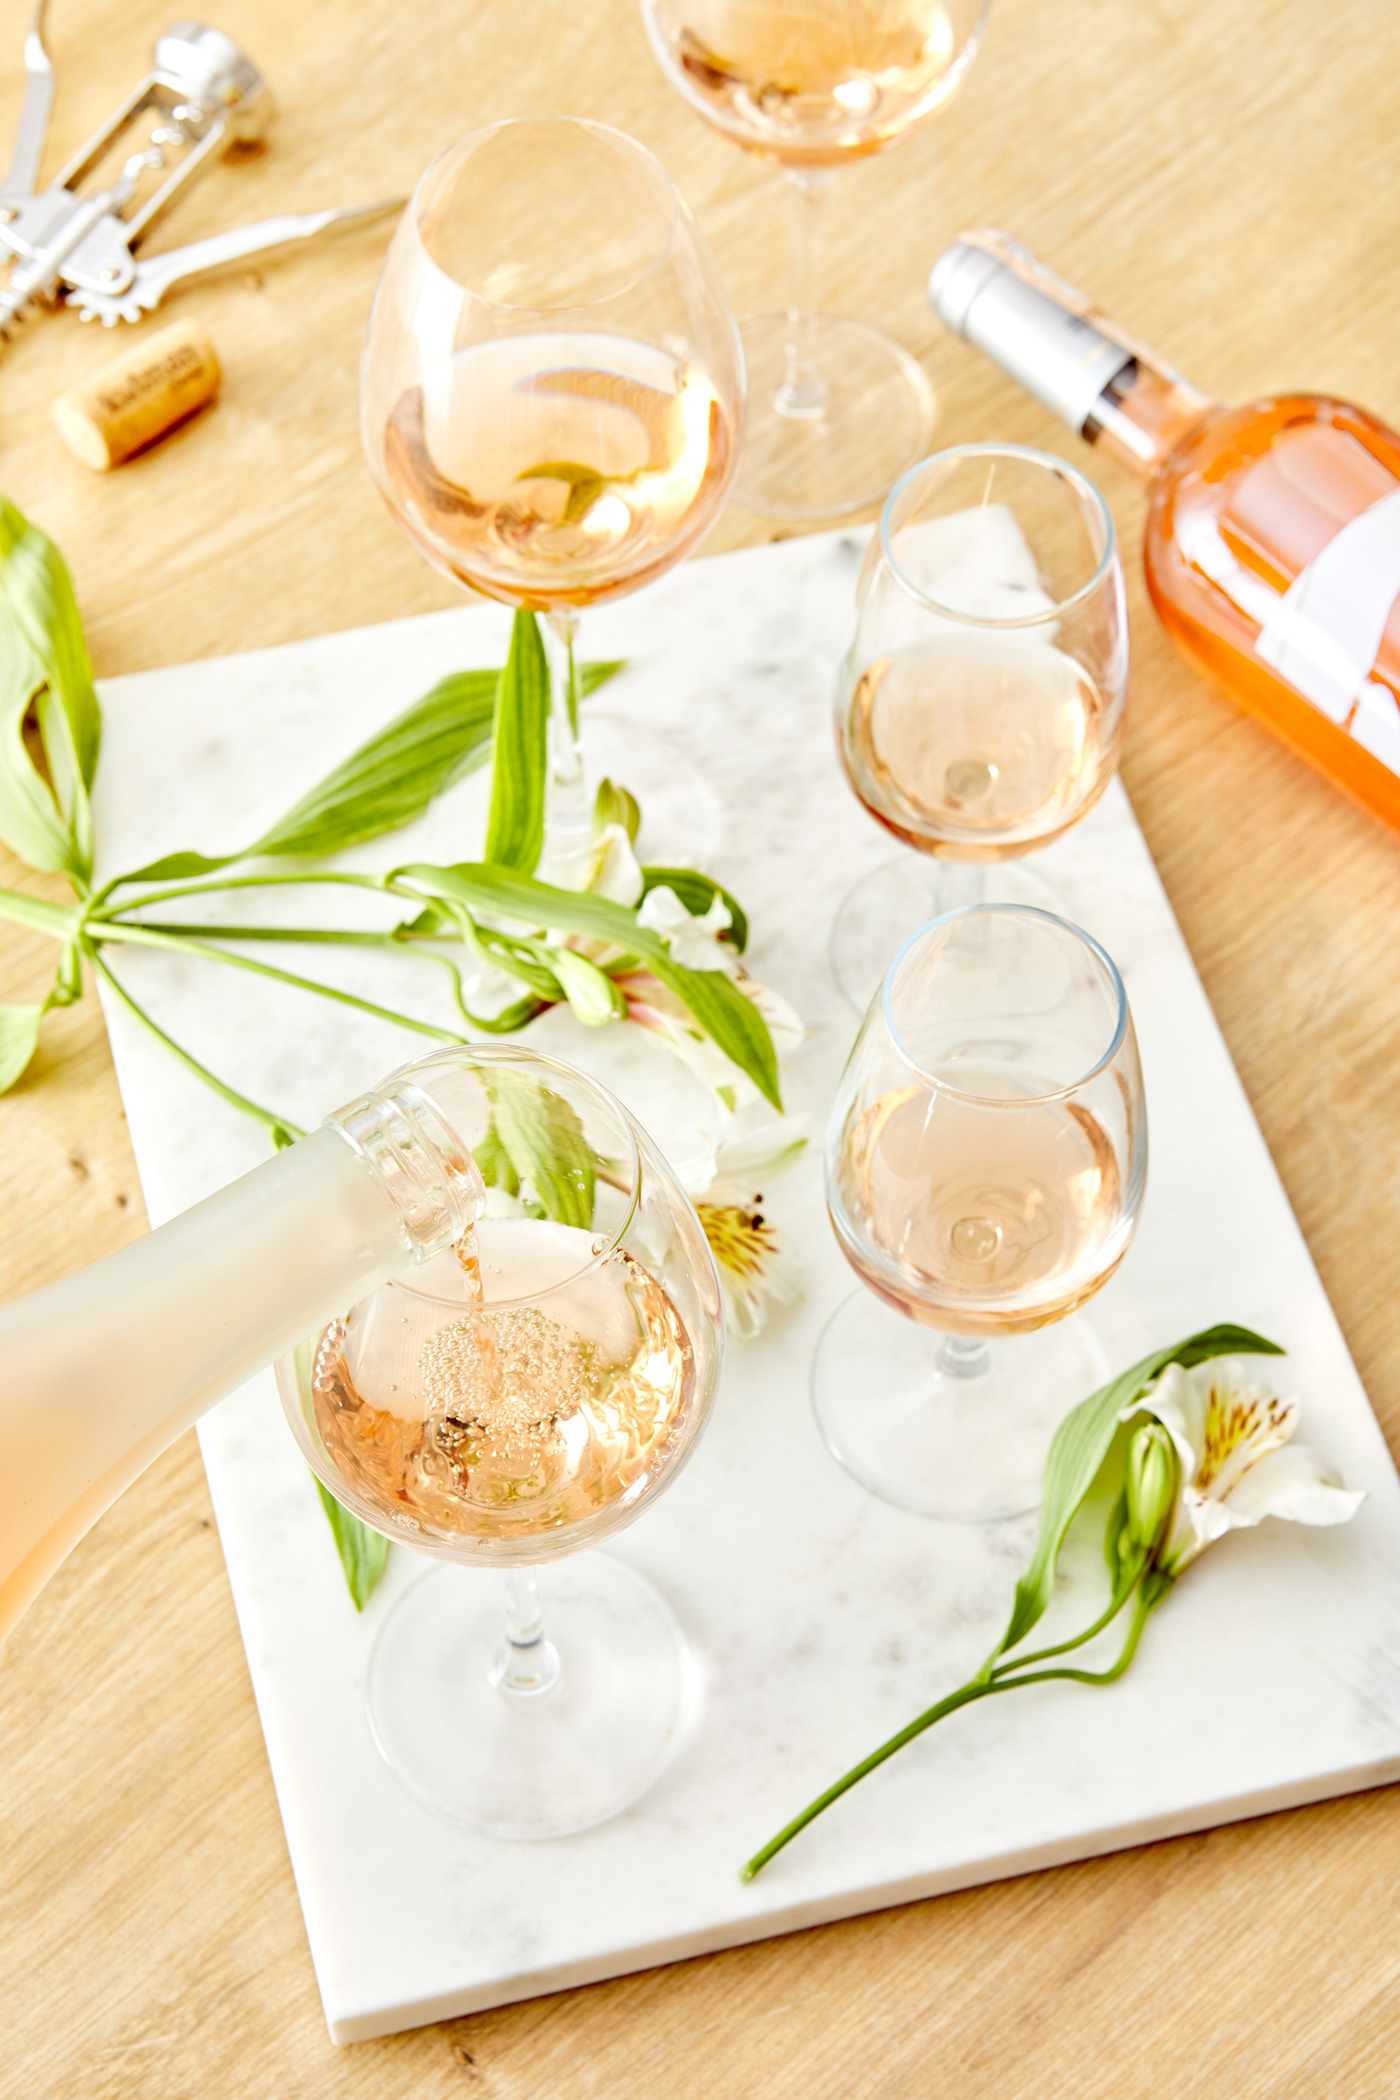 içki kutman Product Photography şarap şişe ürün fotoğrafı vineyard wine